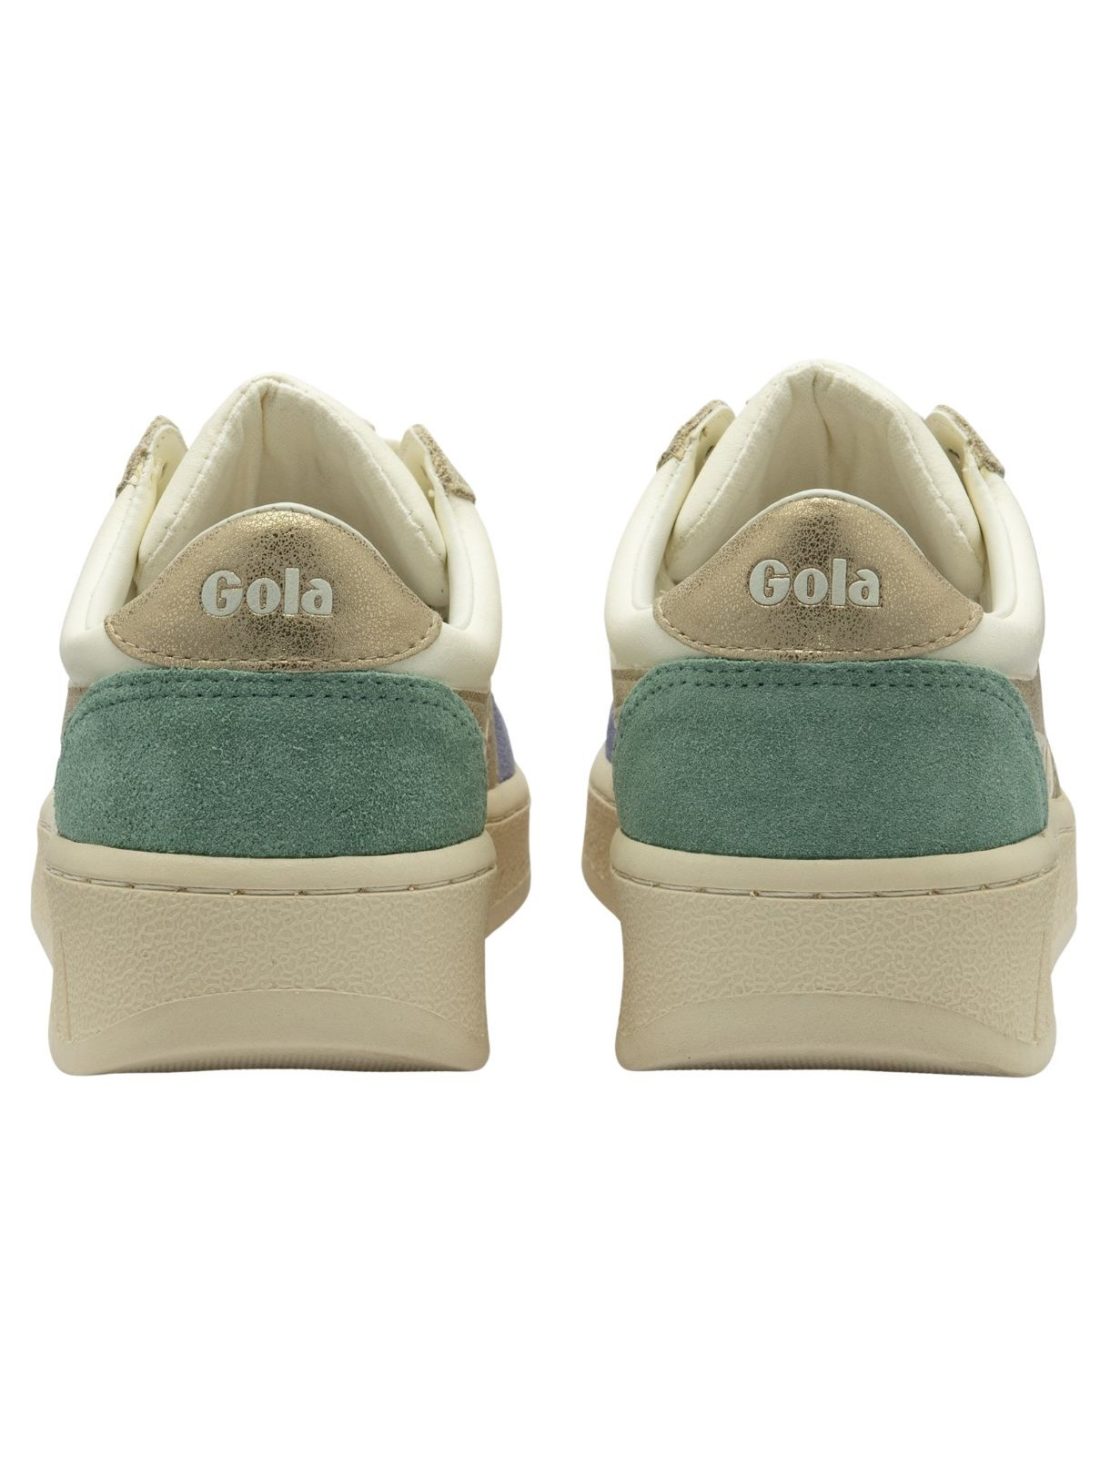 gola grandslam quadrant sneaker white/lavender/gold/green mist